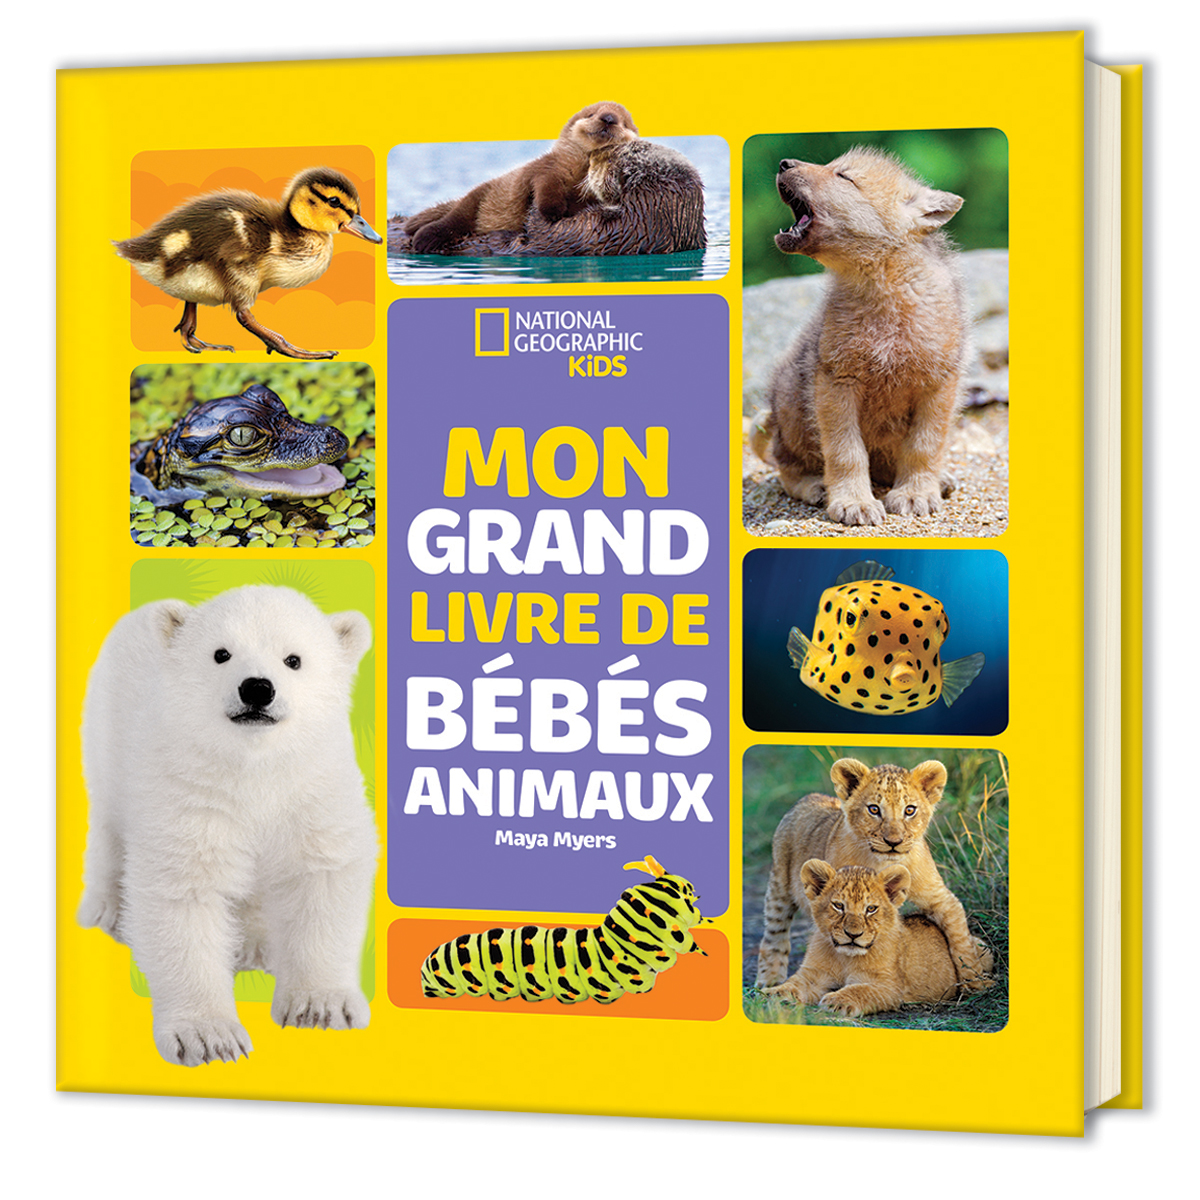  National Geographic Kids: Mon grand livre de bébés animaux 